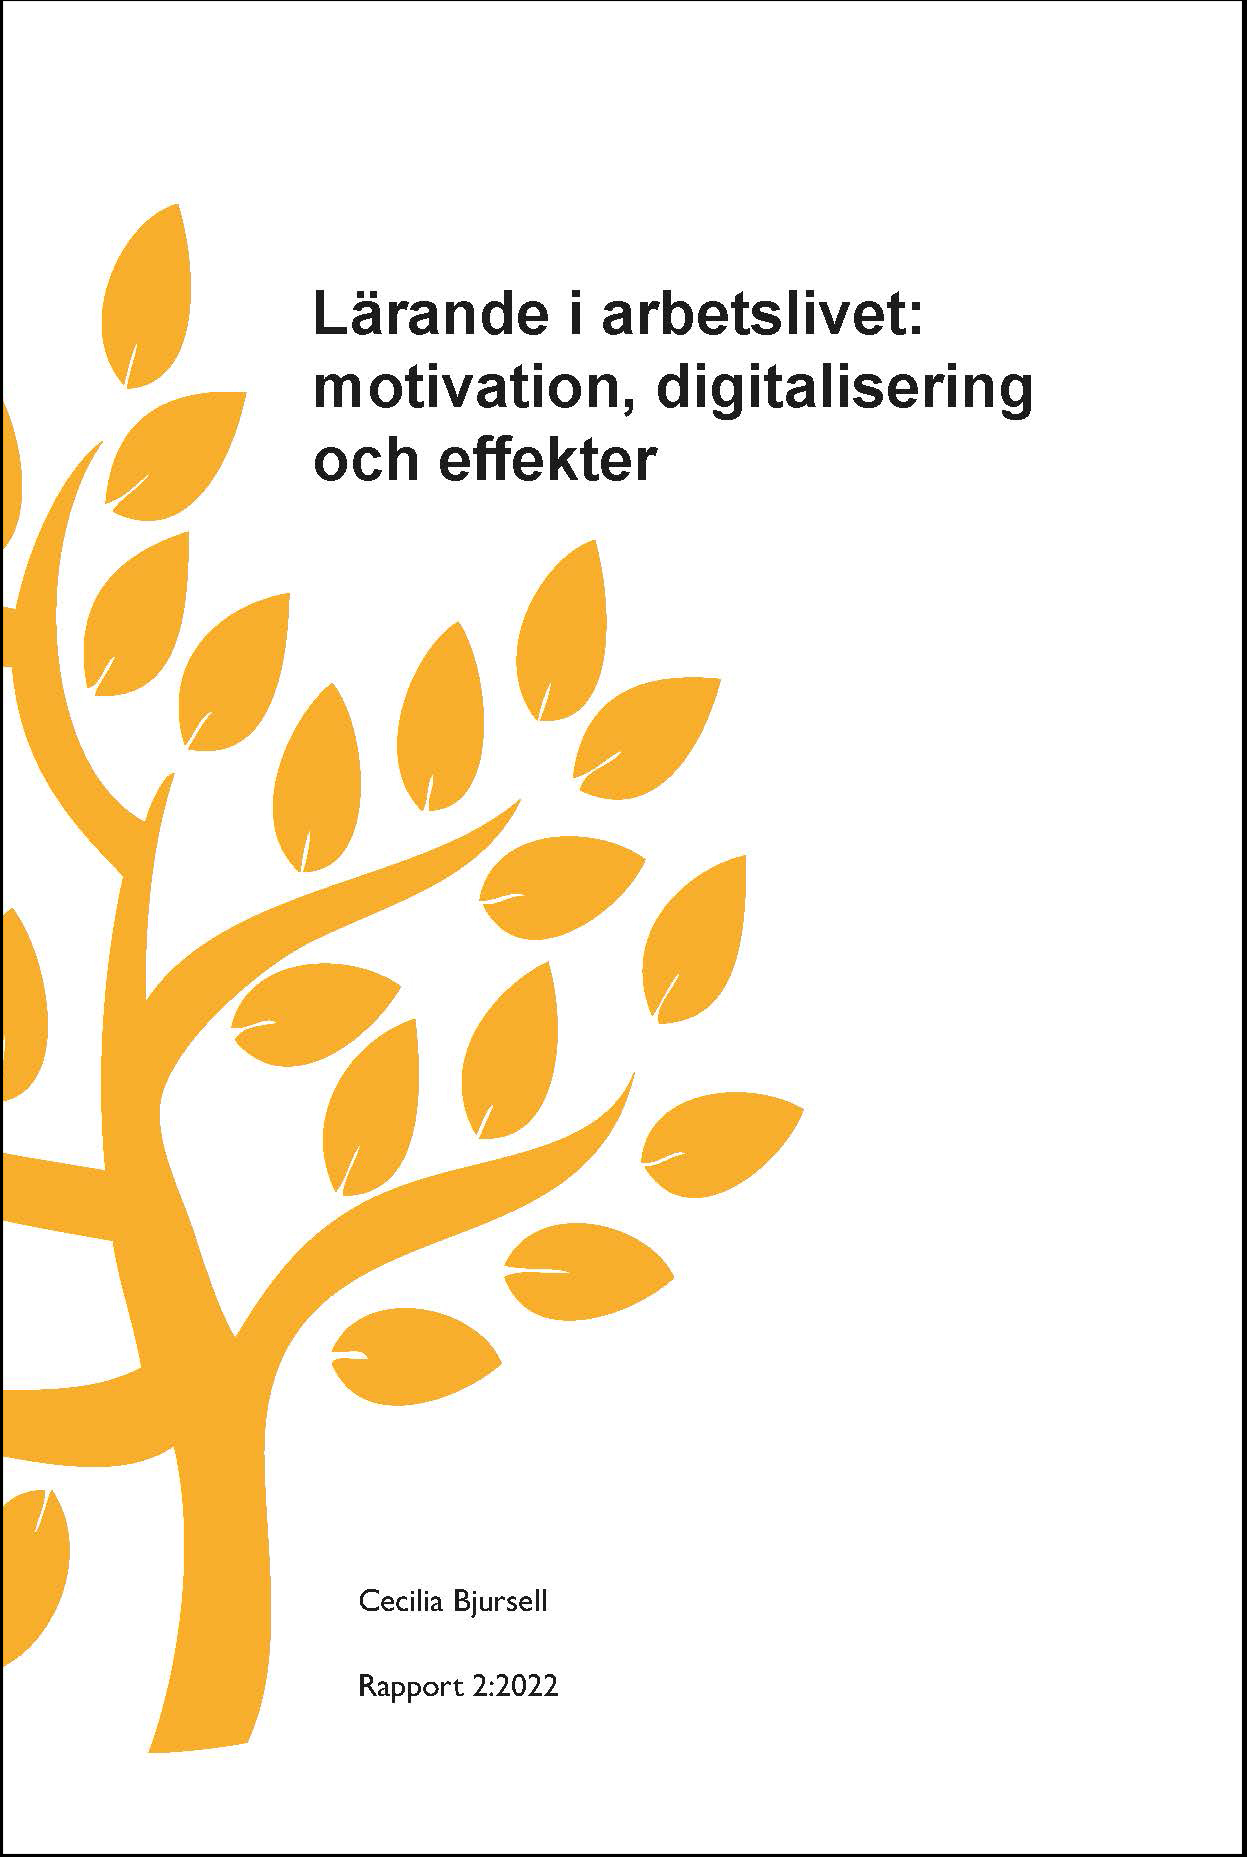 Lärande i arbetslivet – motivation, digitalisering och effekter, Encell rapport 2:2022, Cecilia Bjursell. 